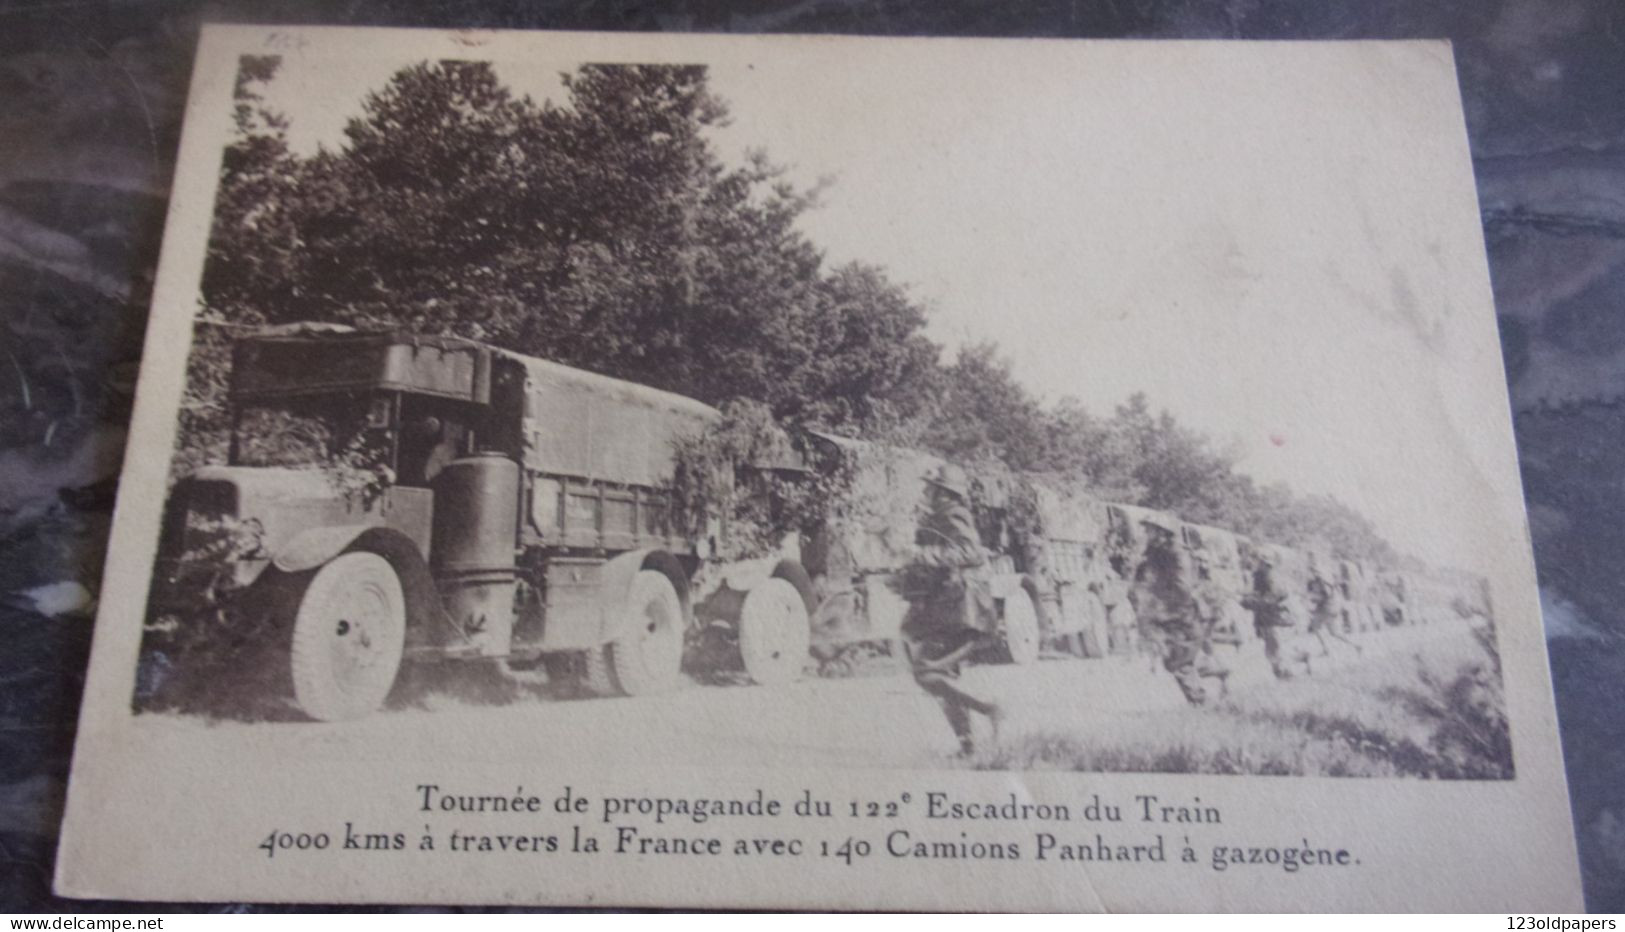 1937 TOURNEE PROPAGANDE DU 122 EME ESCADRON DU TRAIN 140 CAMIONS PANHARD A GAZOGENE 4000KMS A TRAVERS FRANCE - Vrachtwagens En LGV